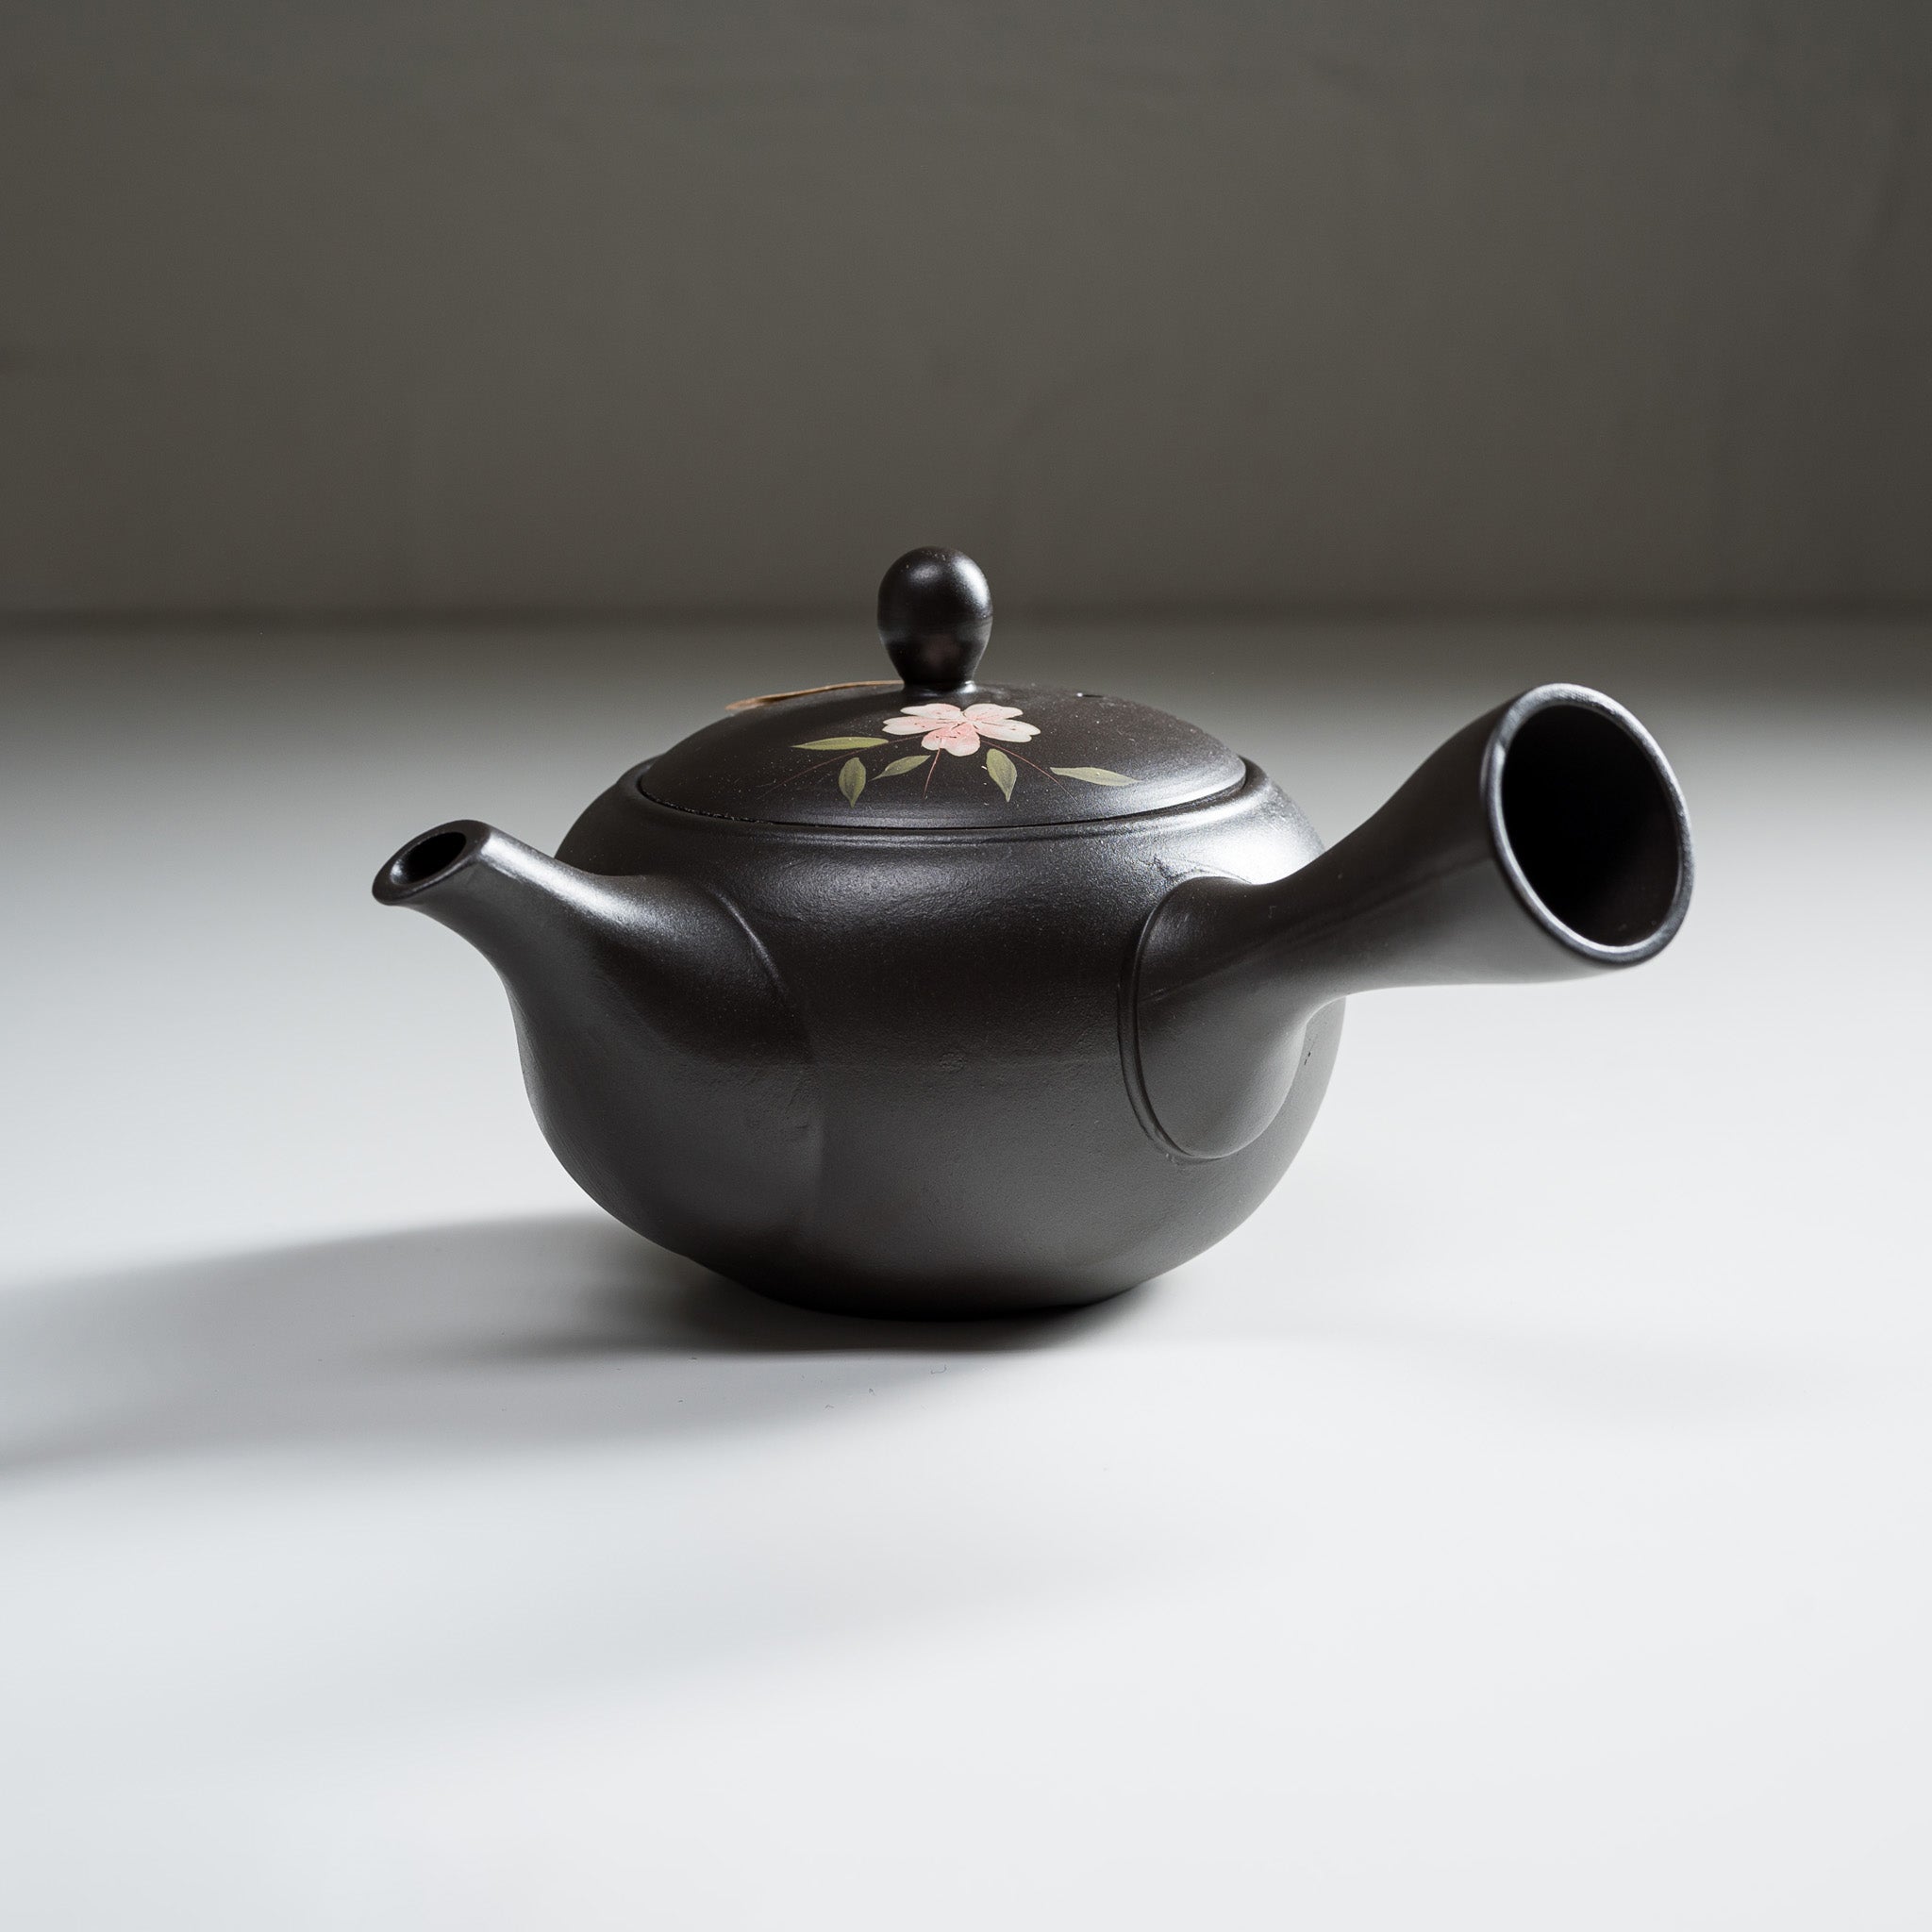 Hand-painted Tokoname Teapot - Sakura Blossom - 330 ml / 常滑急須